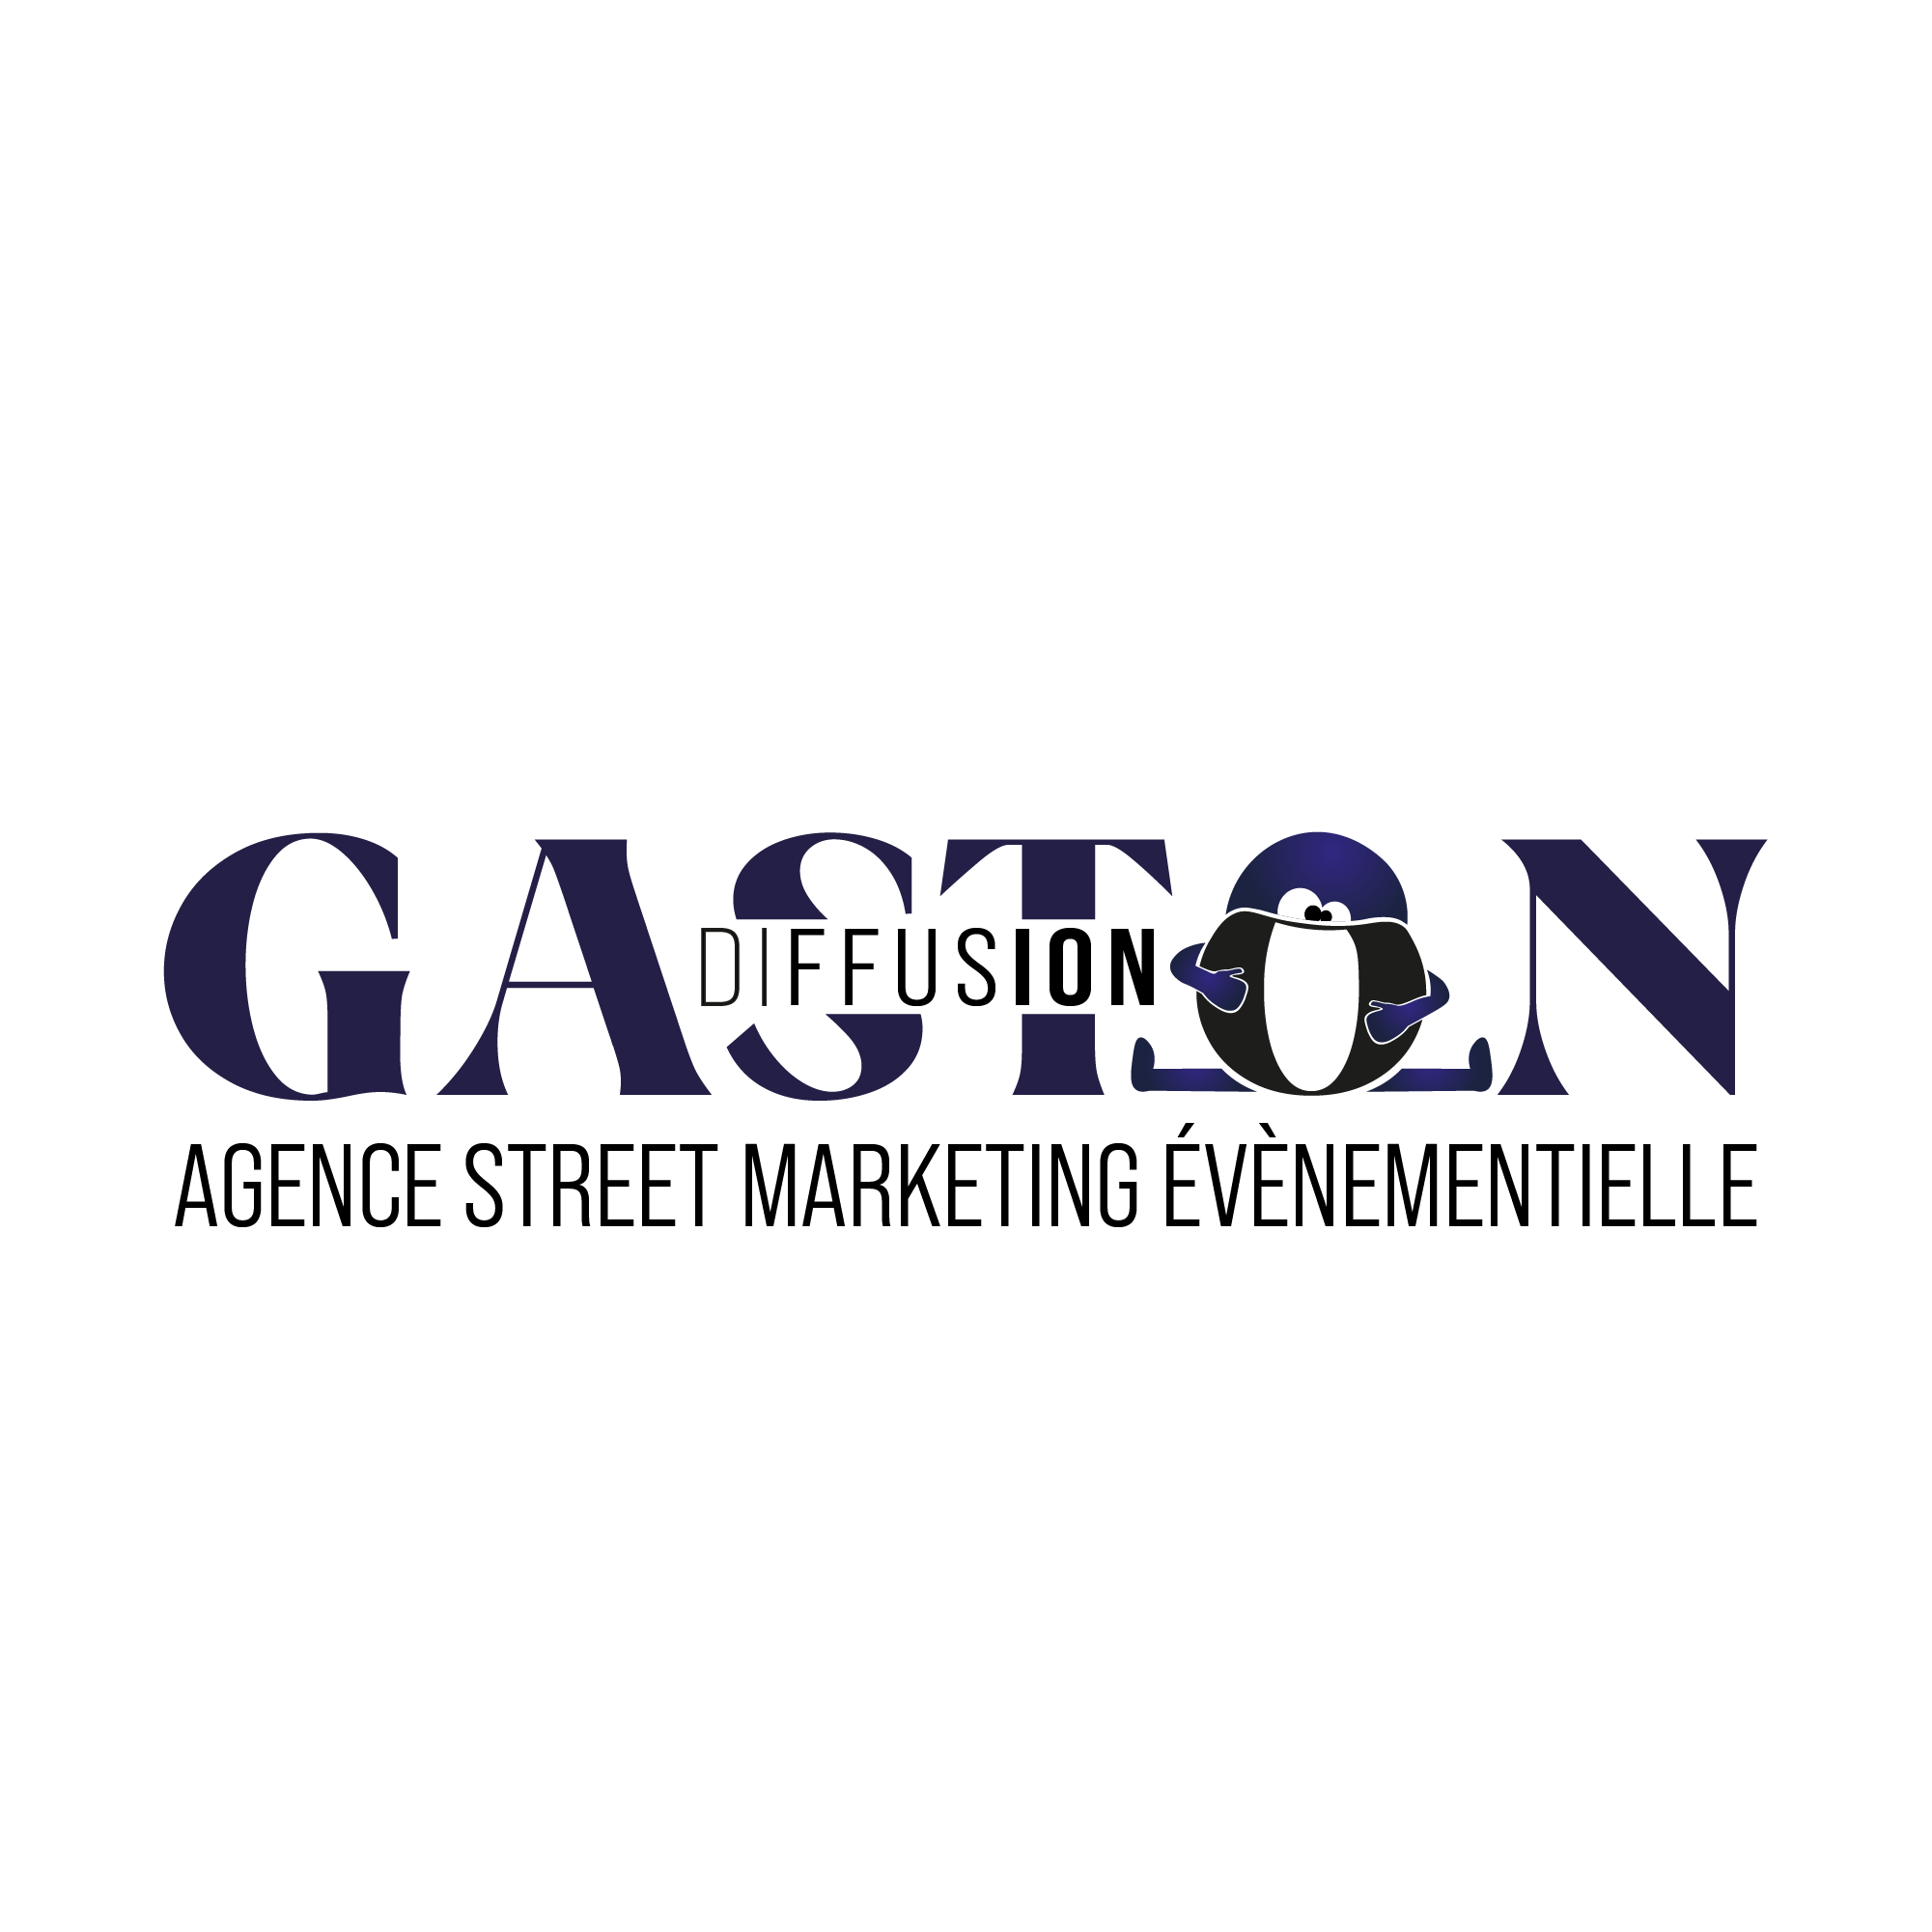 Gaston Diffusion